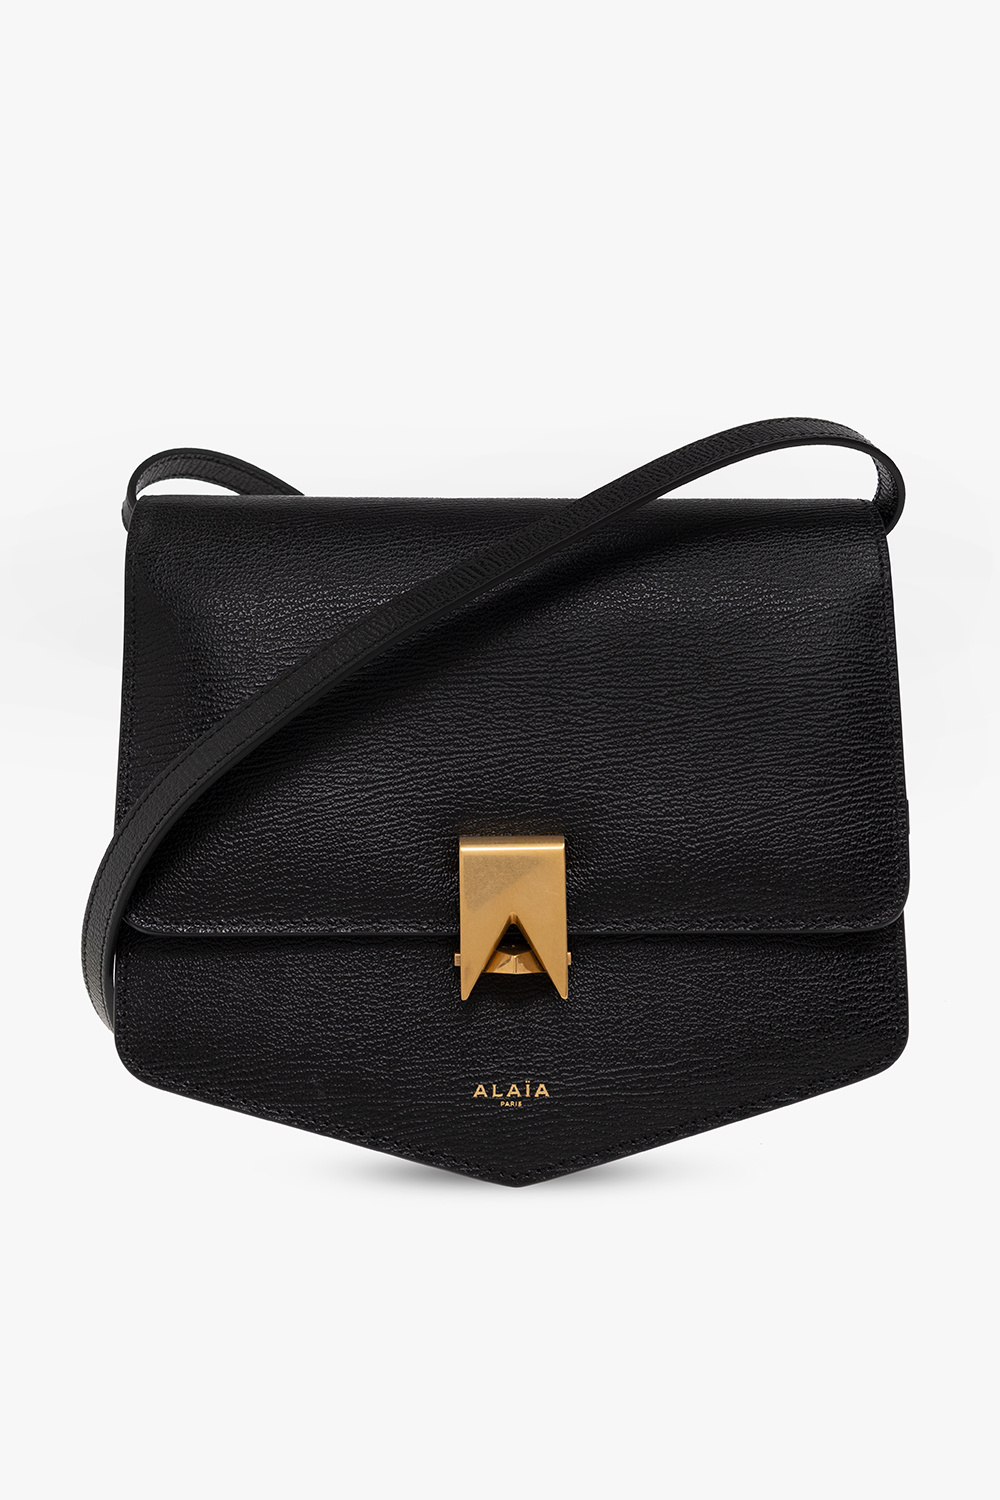 Alaïa ‘Le Papa’ shoulder bag